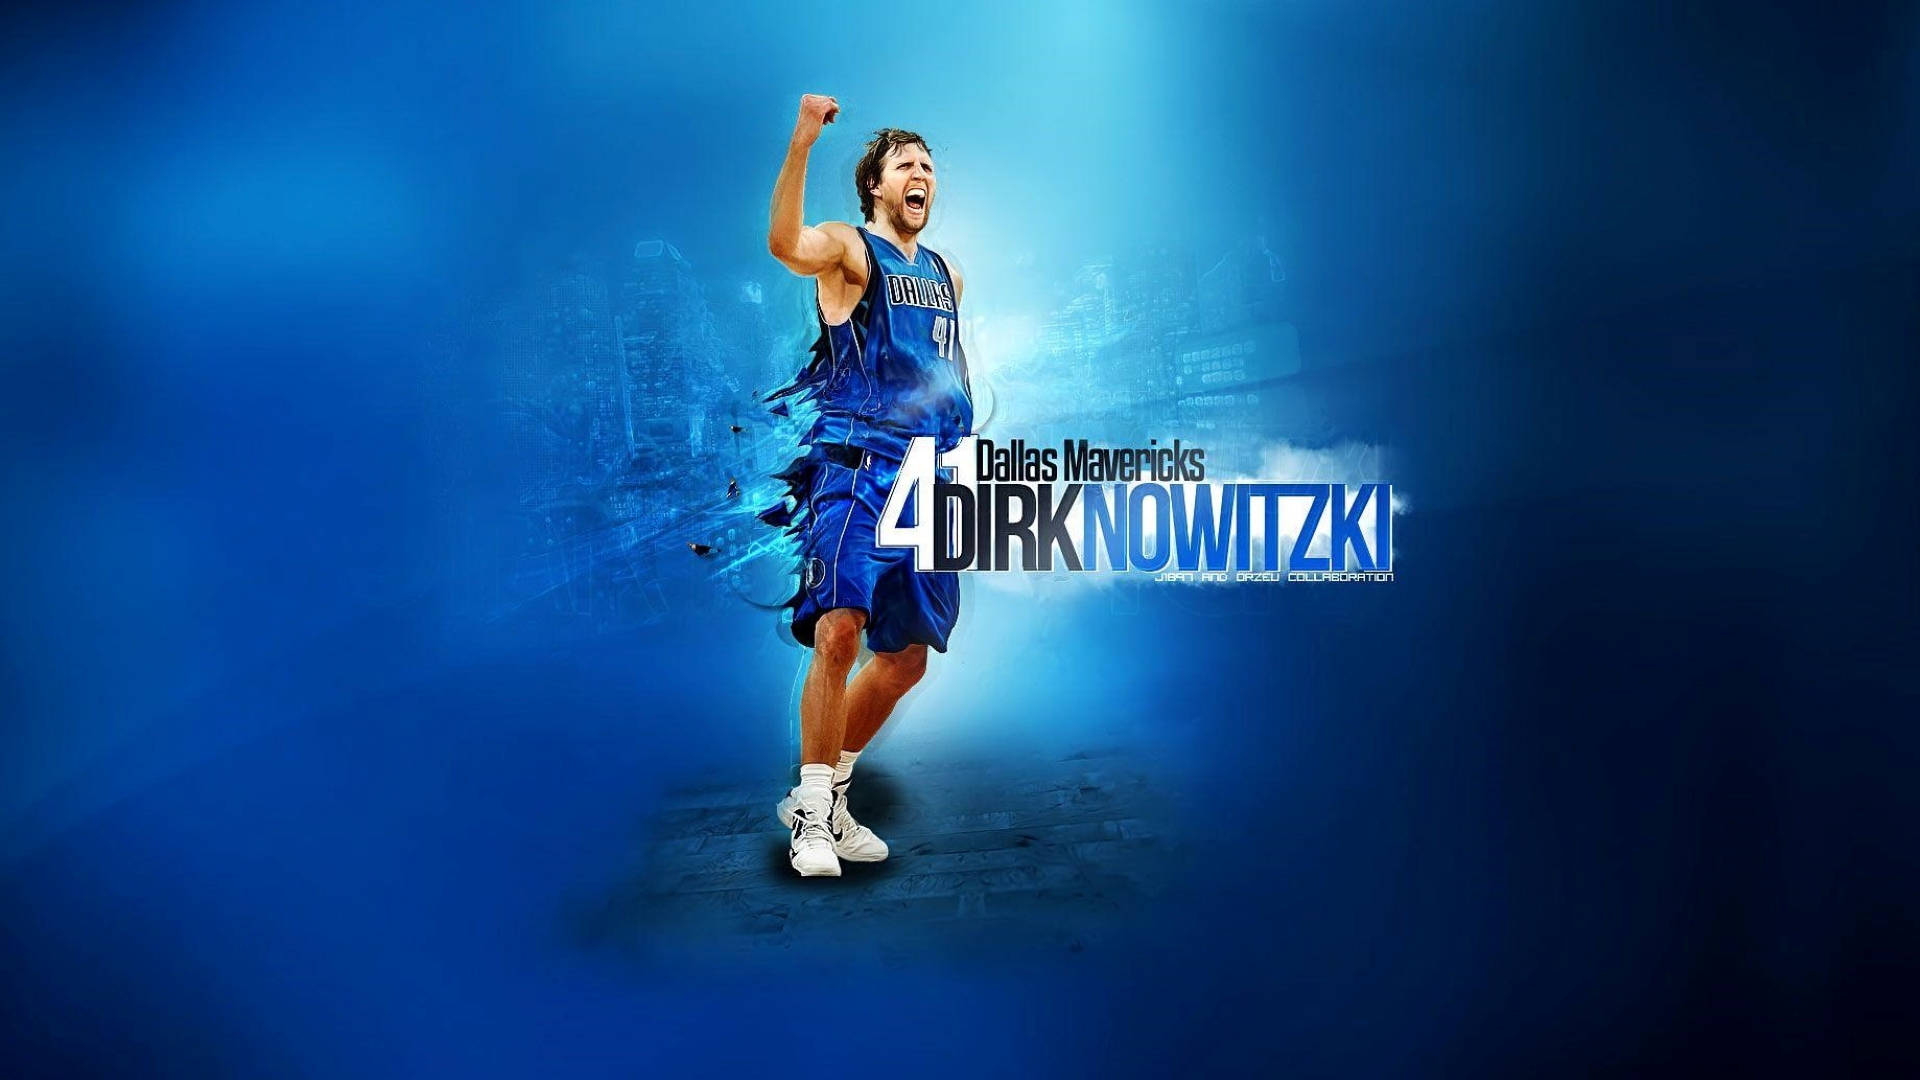 Dirk Nowitzki Player Number 41 Wallpaper